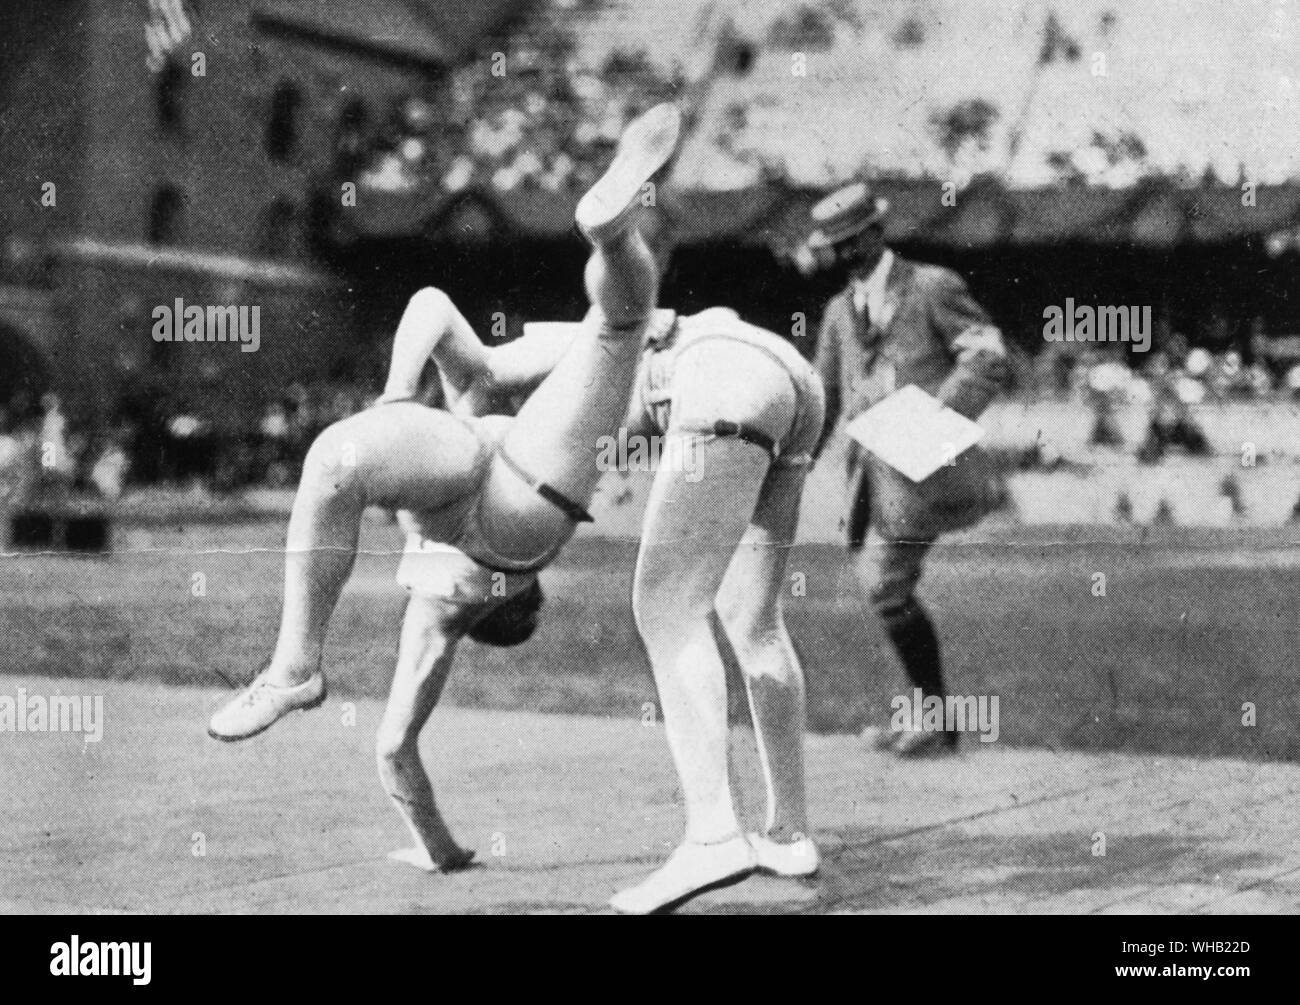 Stoccolma 1912 Giochi Olimpici. Una dimostrazione di wrestling glima. Glima wrestling è ancora praticata in Scandinavia e oggi si ritiene che esso è quasi immutata dall'epoca vichinga. I Giochi Olimpici a pagina 75. Foto Stock